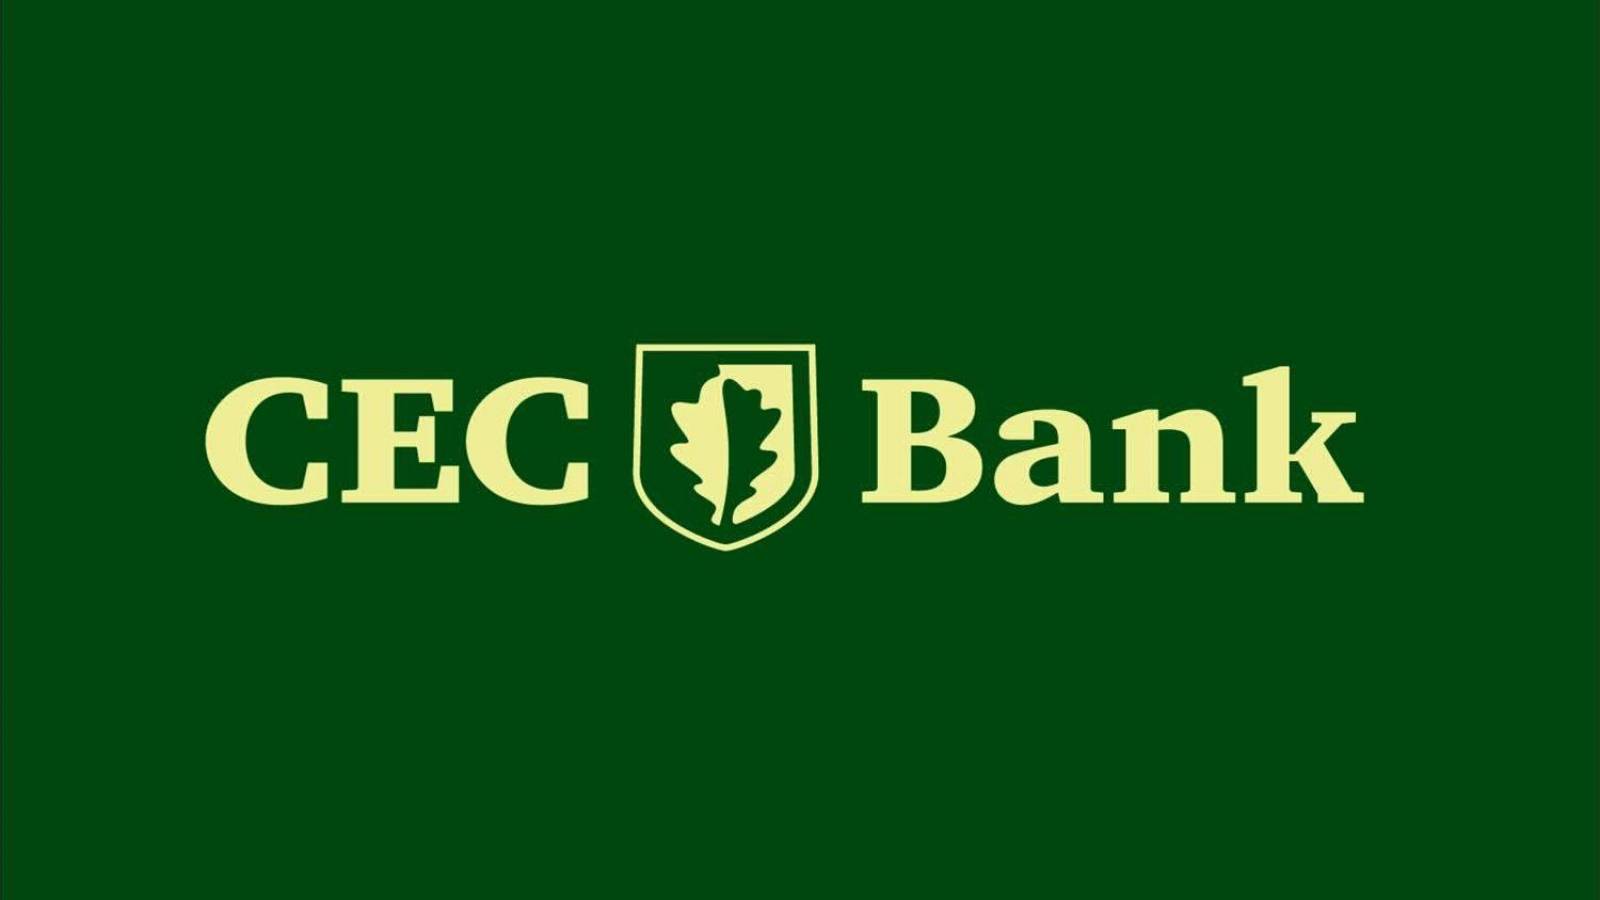 Identidad del banco CEC